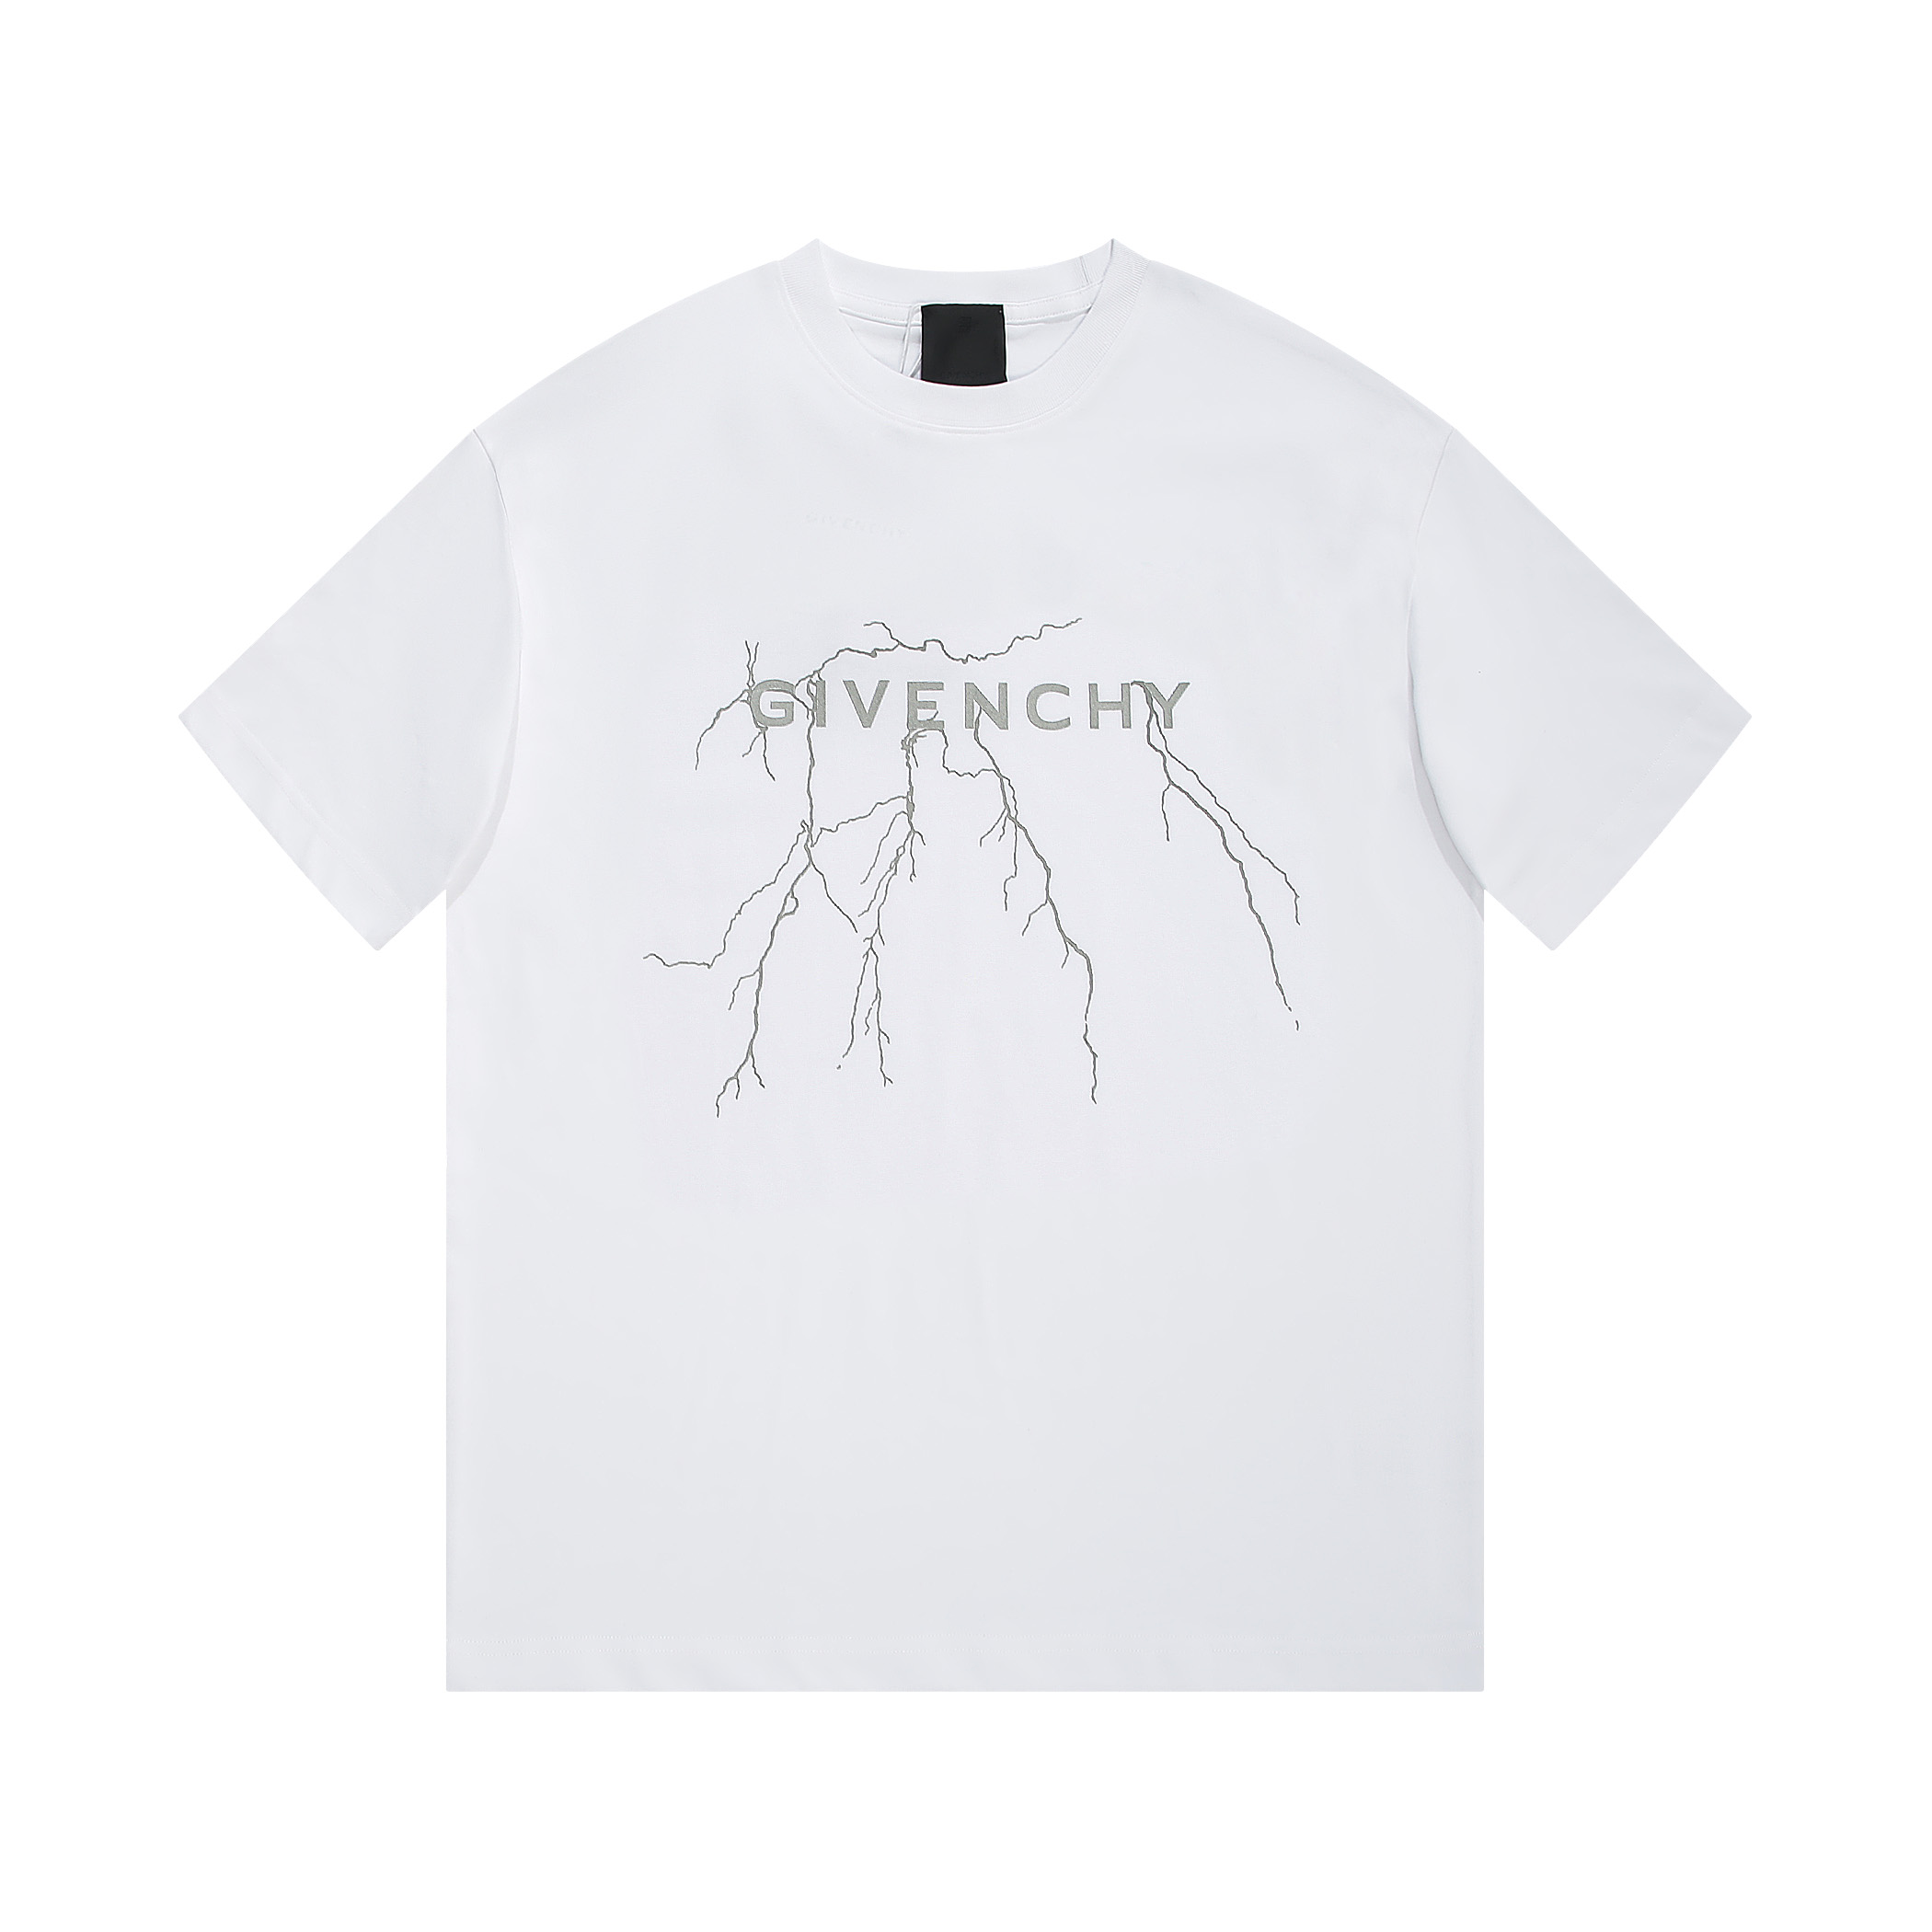 Givenchy Clothing T-Shirt Black White Printing Unisex Cotton Short Sleeve